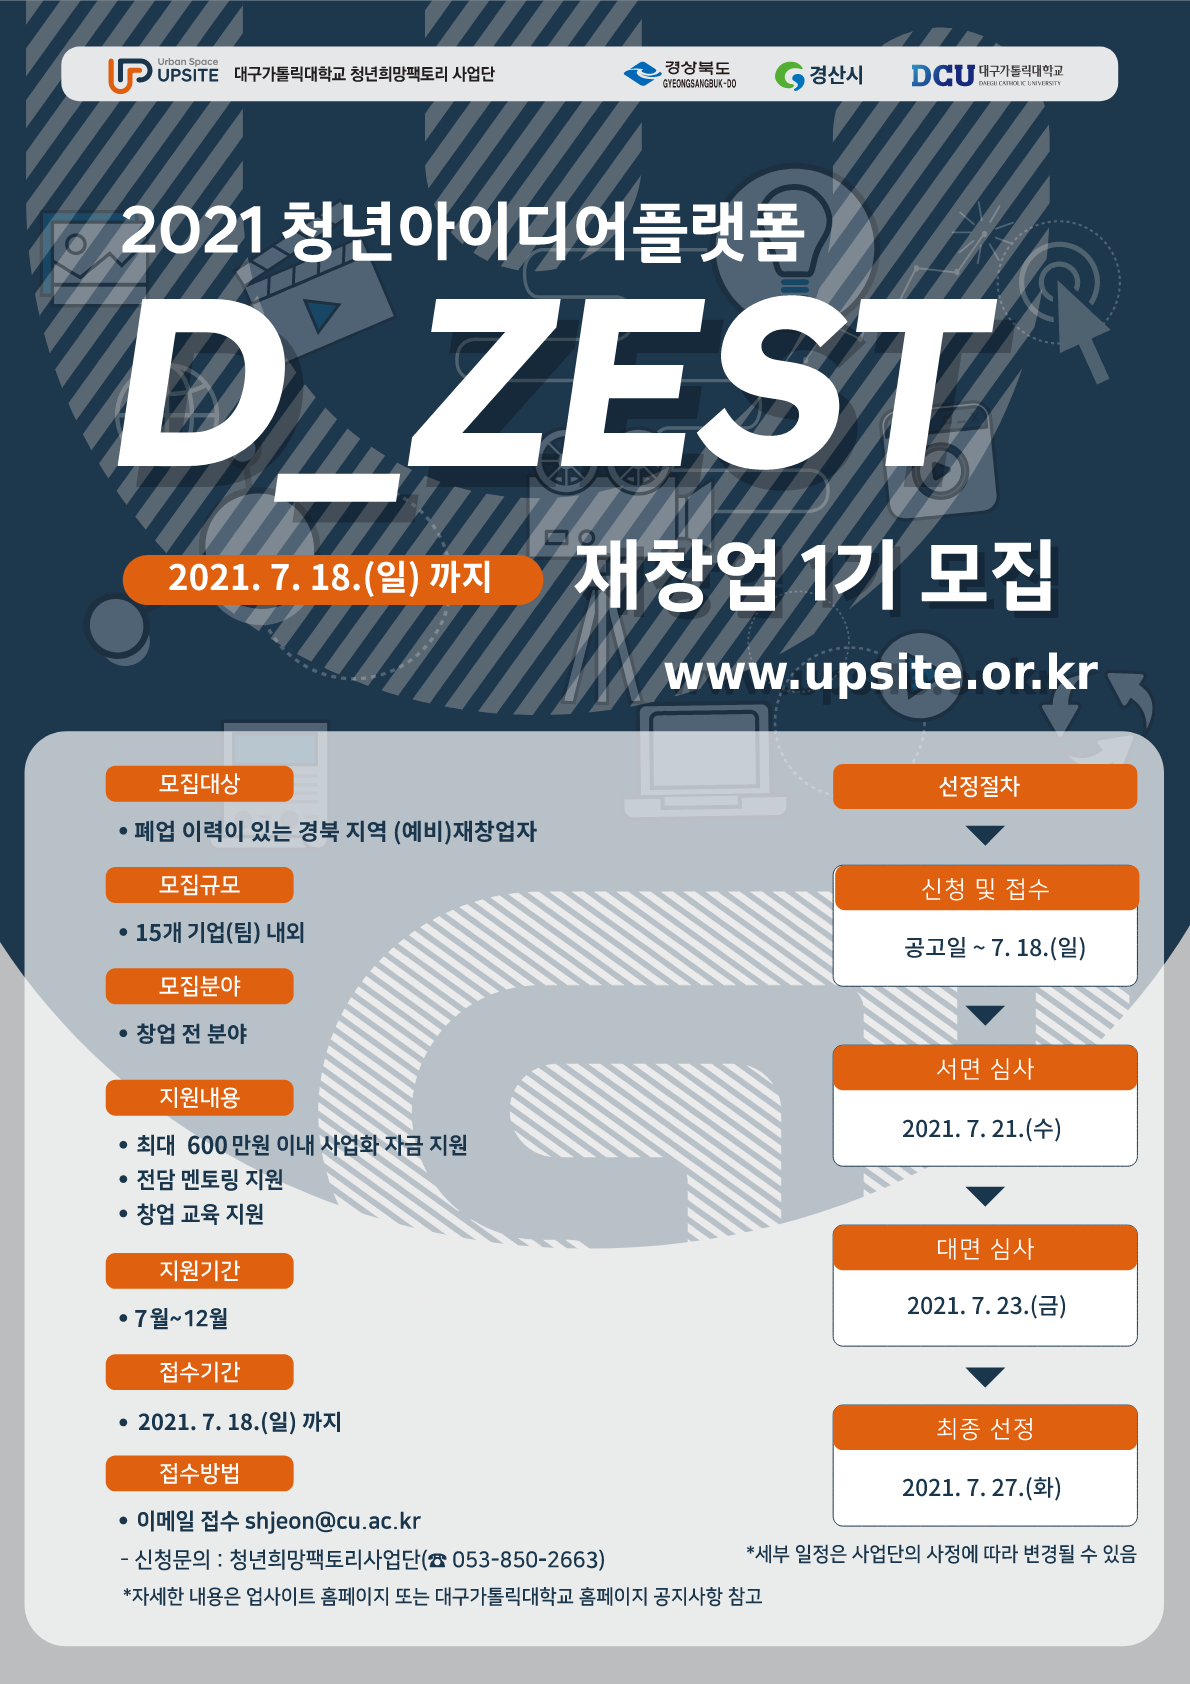 2021 청년아이디어플랫폼 “D_ZEST 재창업”(1기)  모집 게시물 첨부이미지